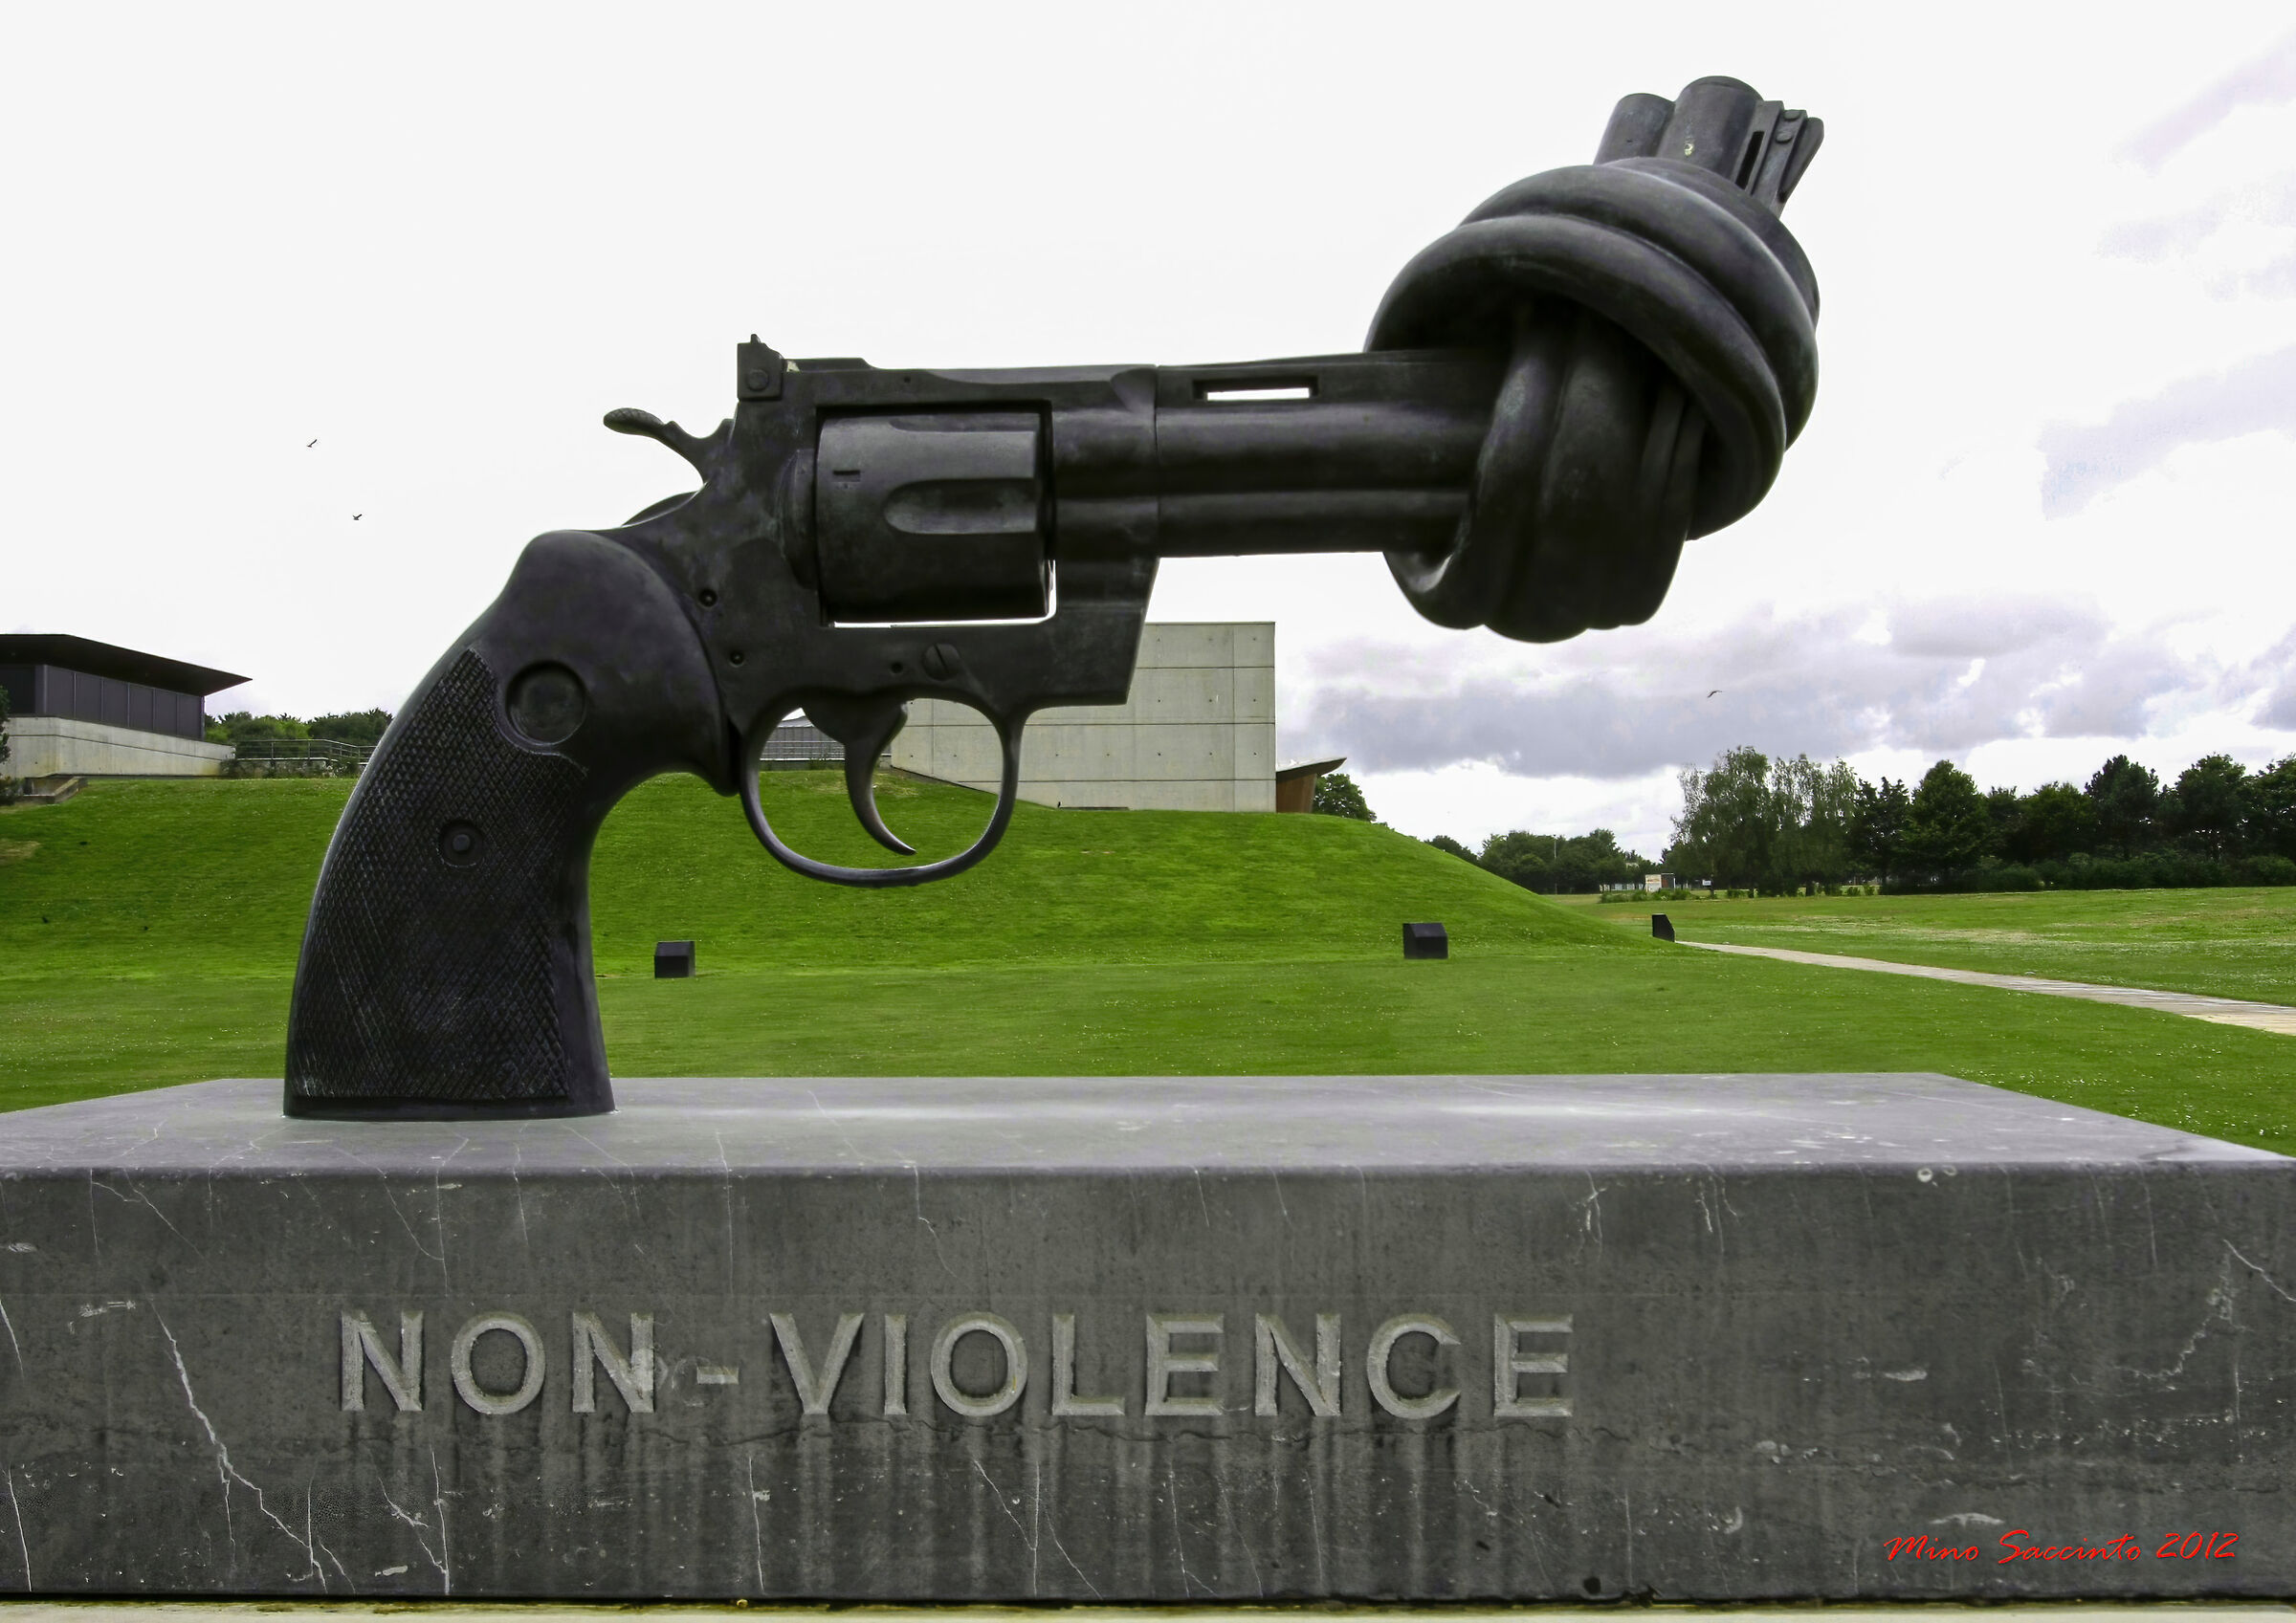 NON VIOLENCE...